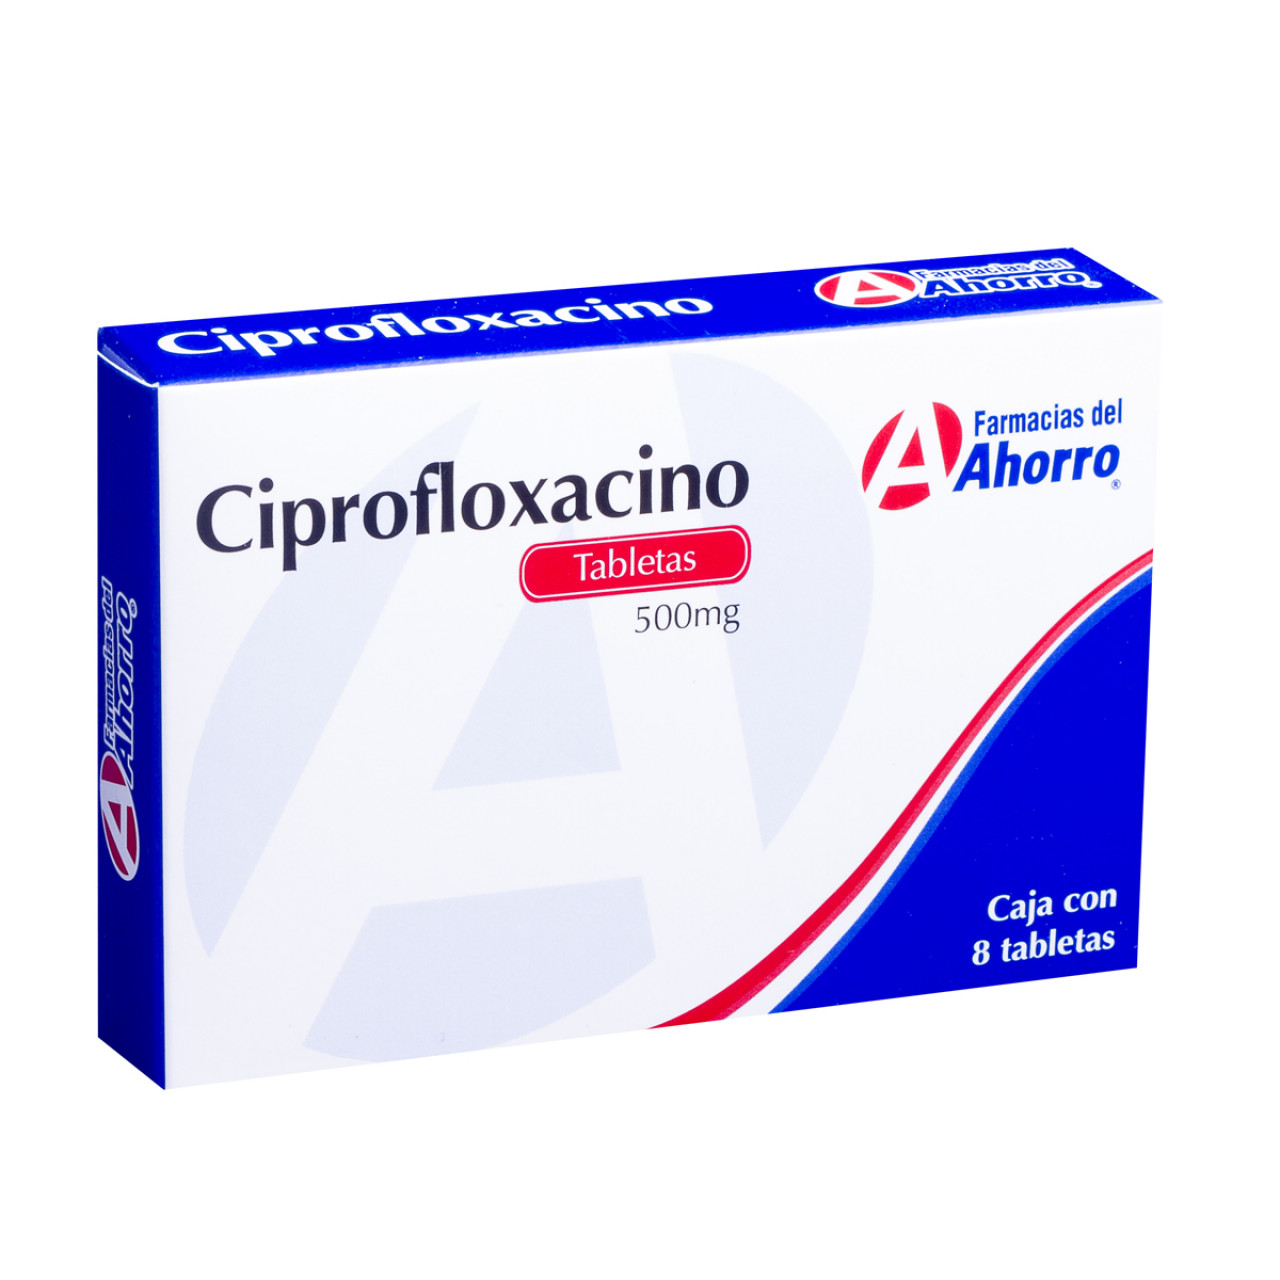 How to use Ciproflaxacin